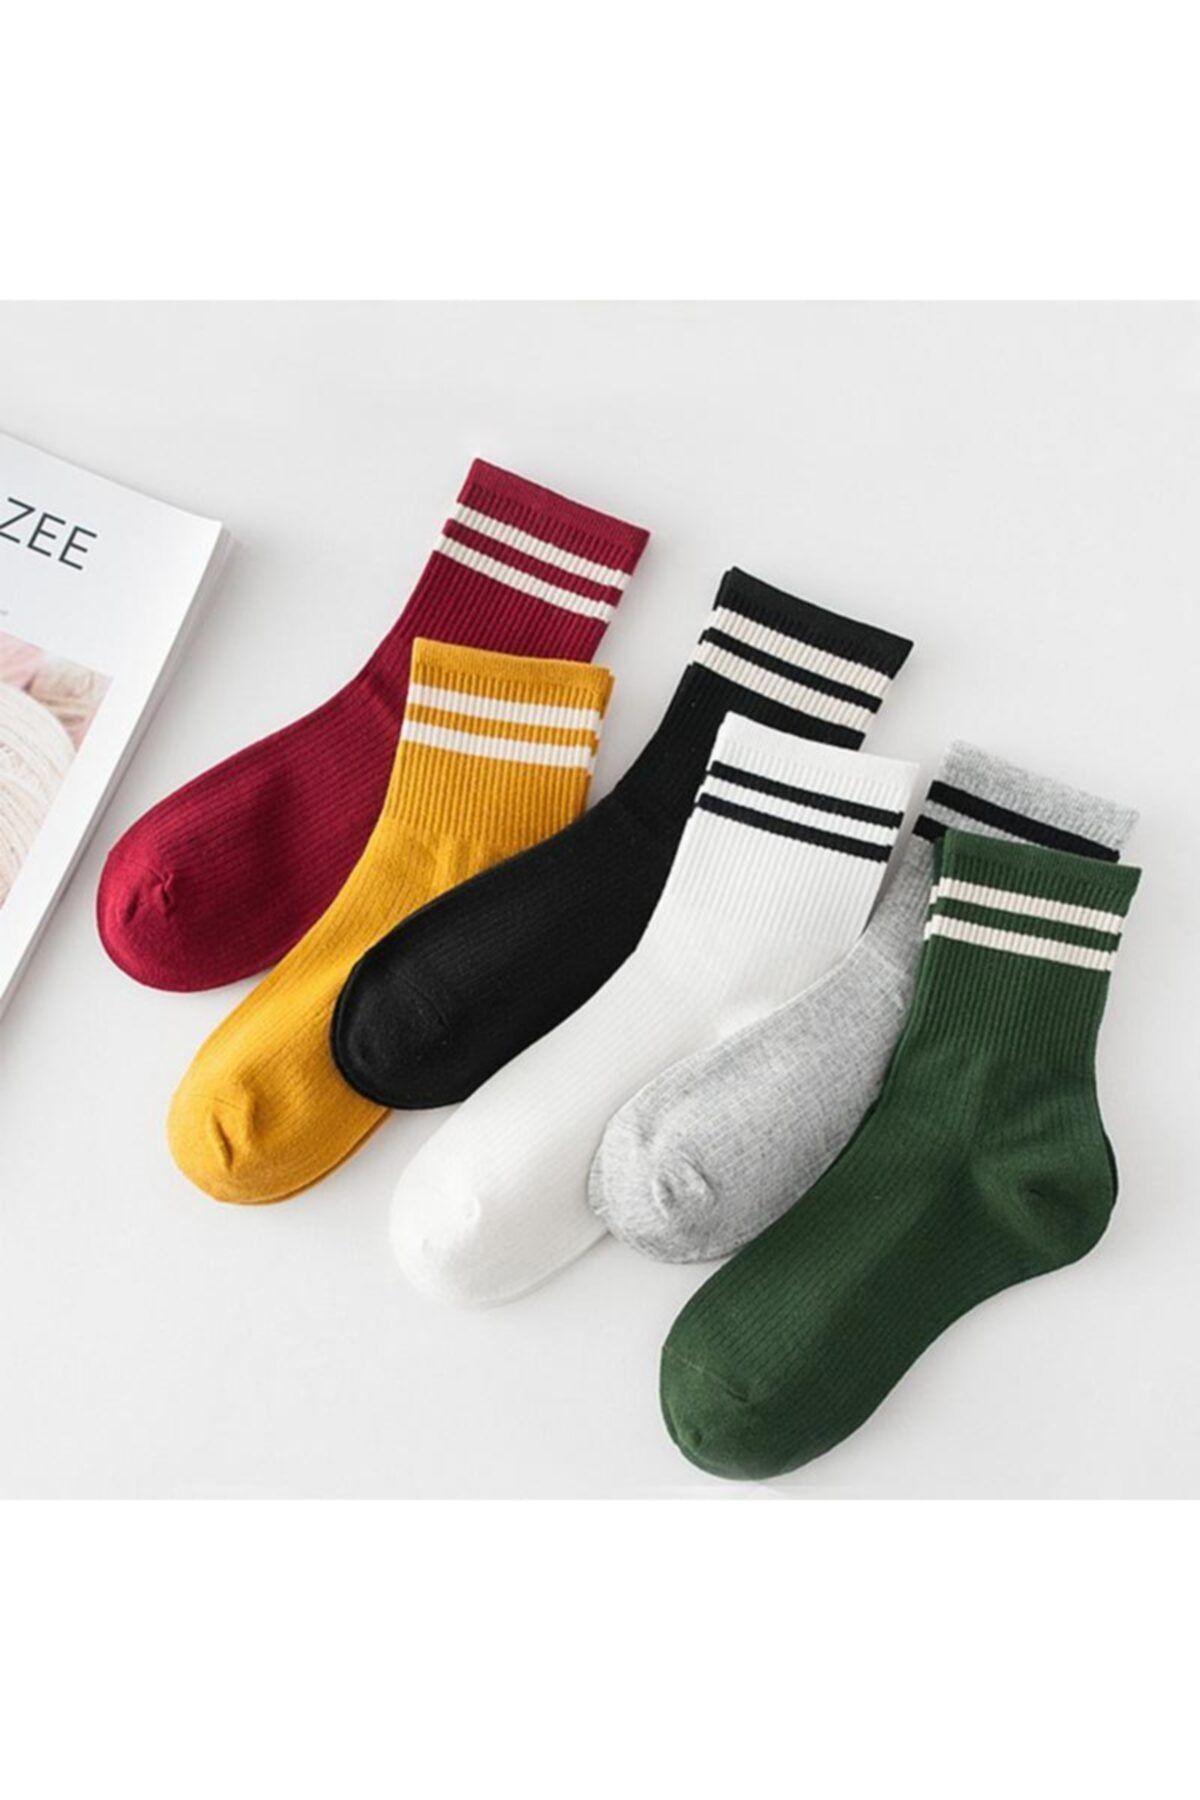 İkonik Socks Unisex 6’lı Karışık Renkli Çizgili Tenis Çorap